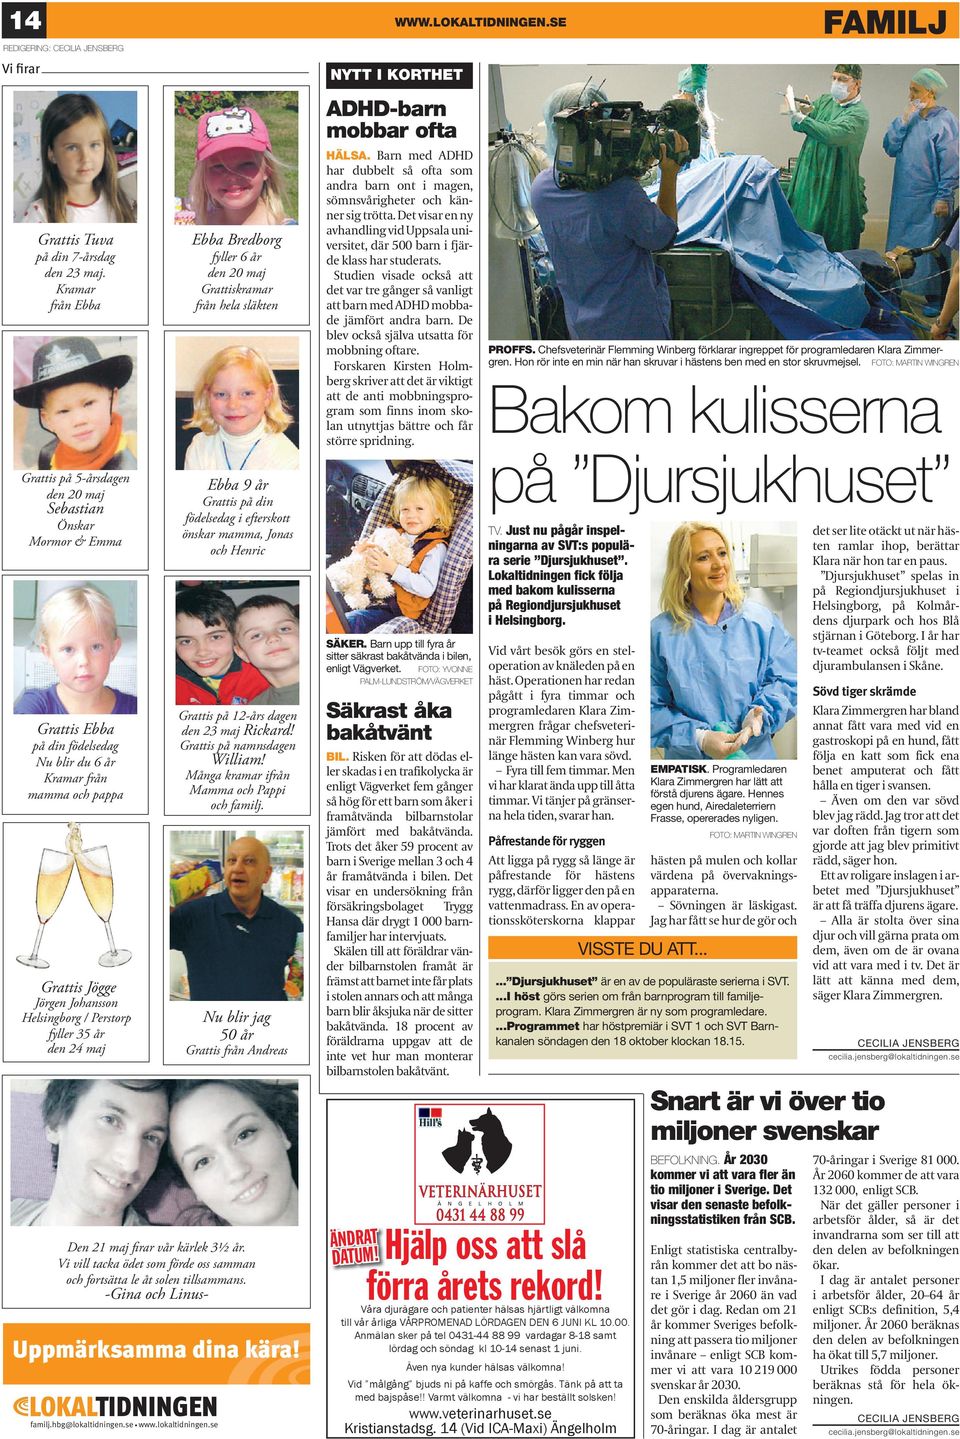 / Perstorp fyller 35 år den 24 maj Uppmärksamma dina kära! familj.hbg@lokaltidningen.